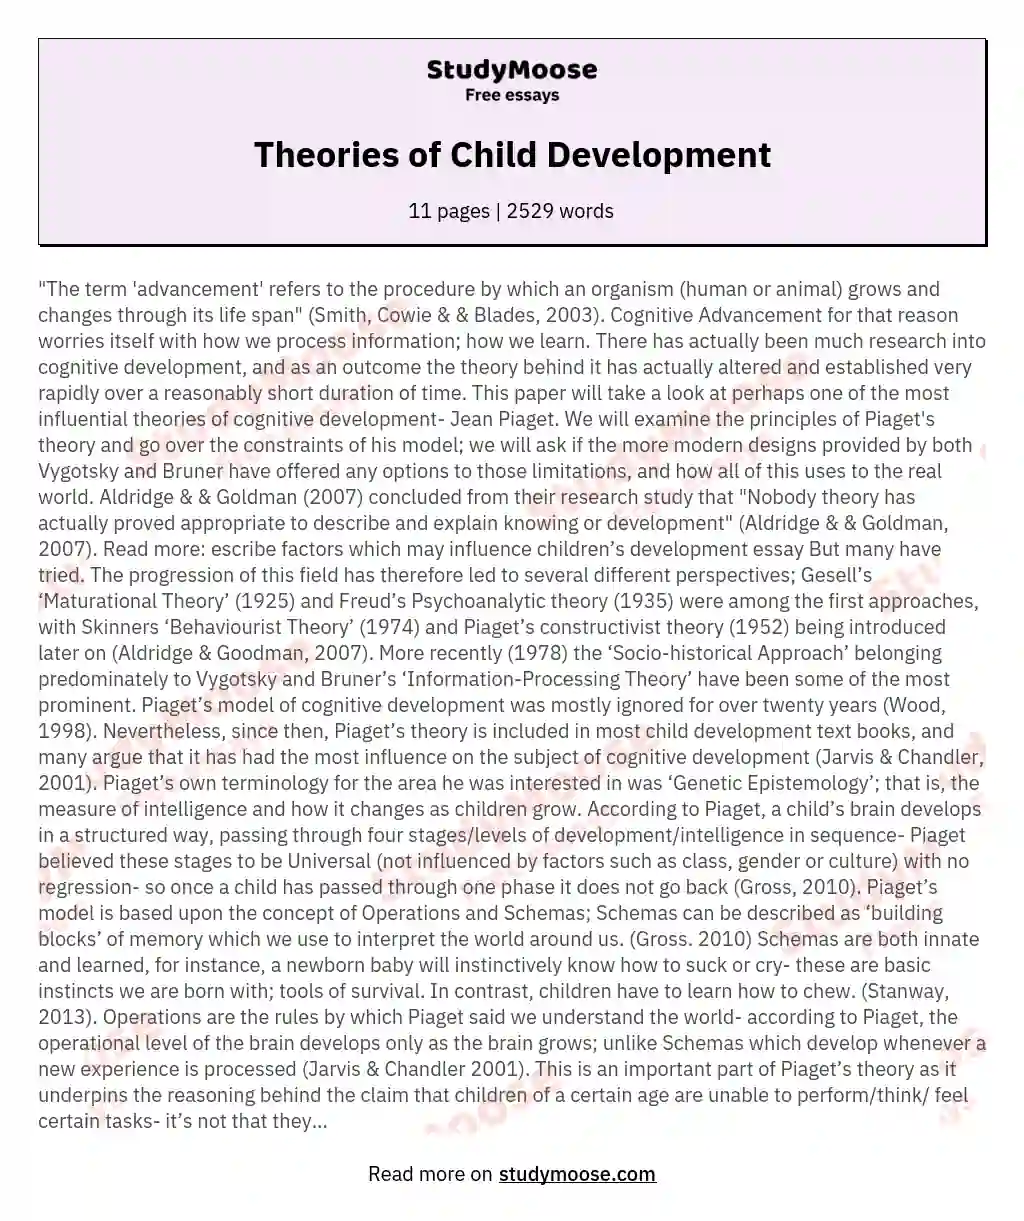 Theories of Child Development essay